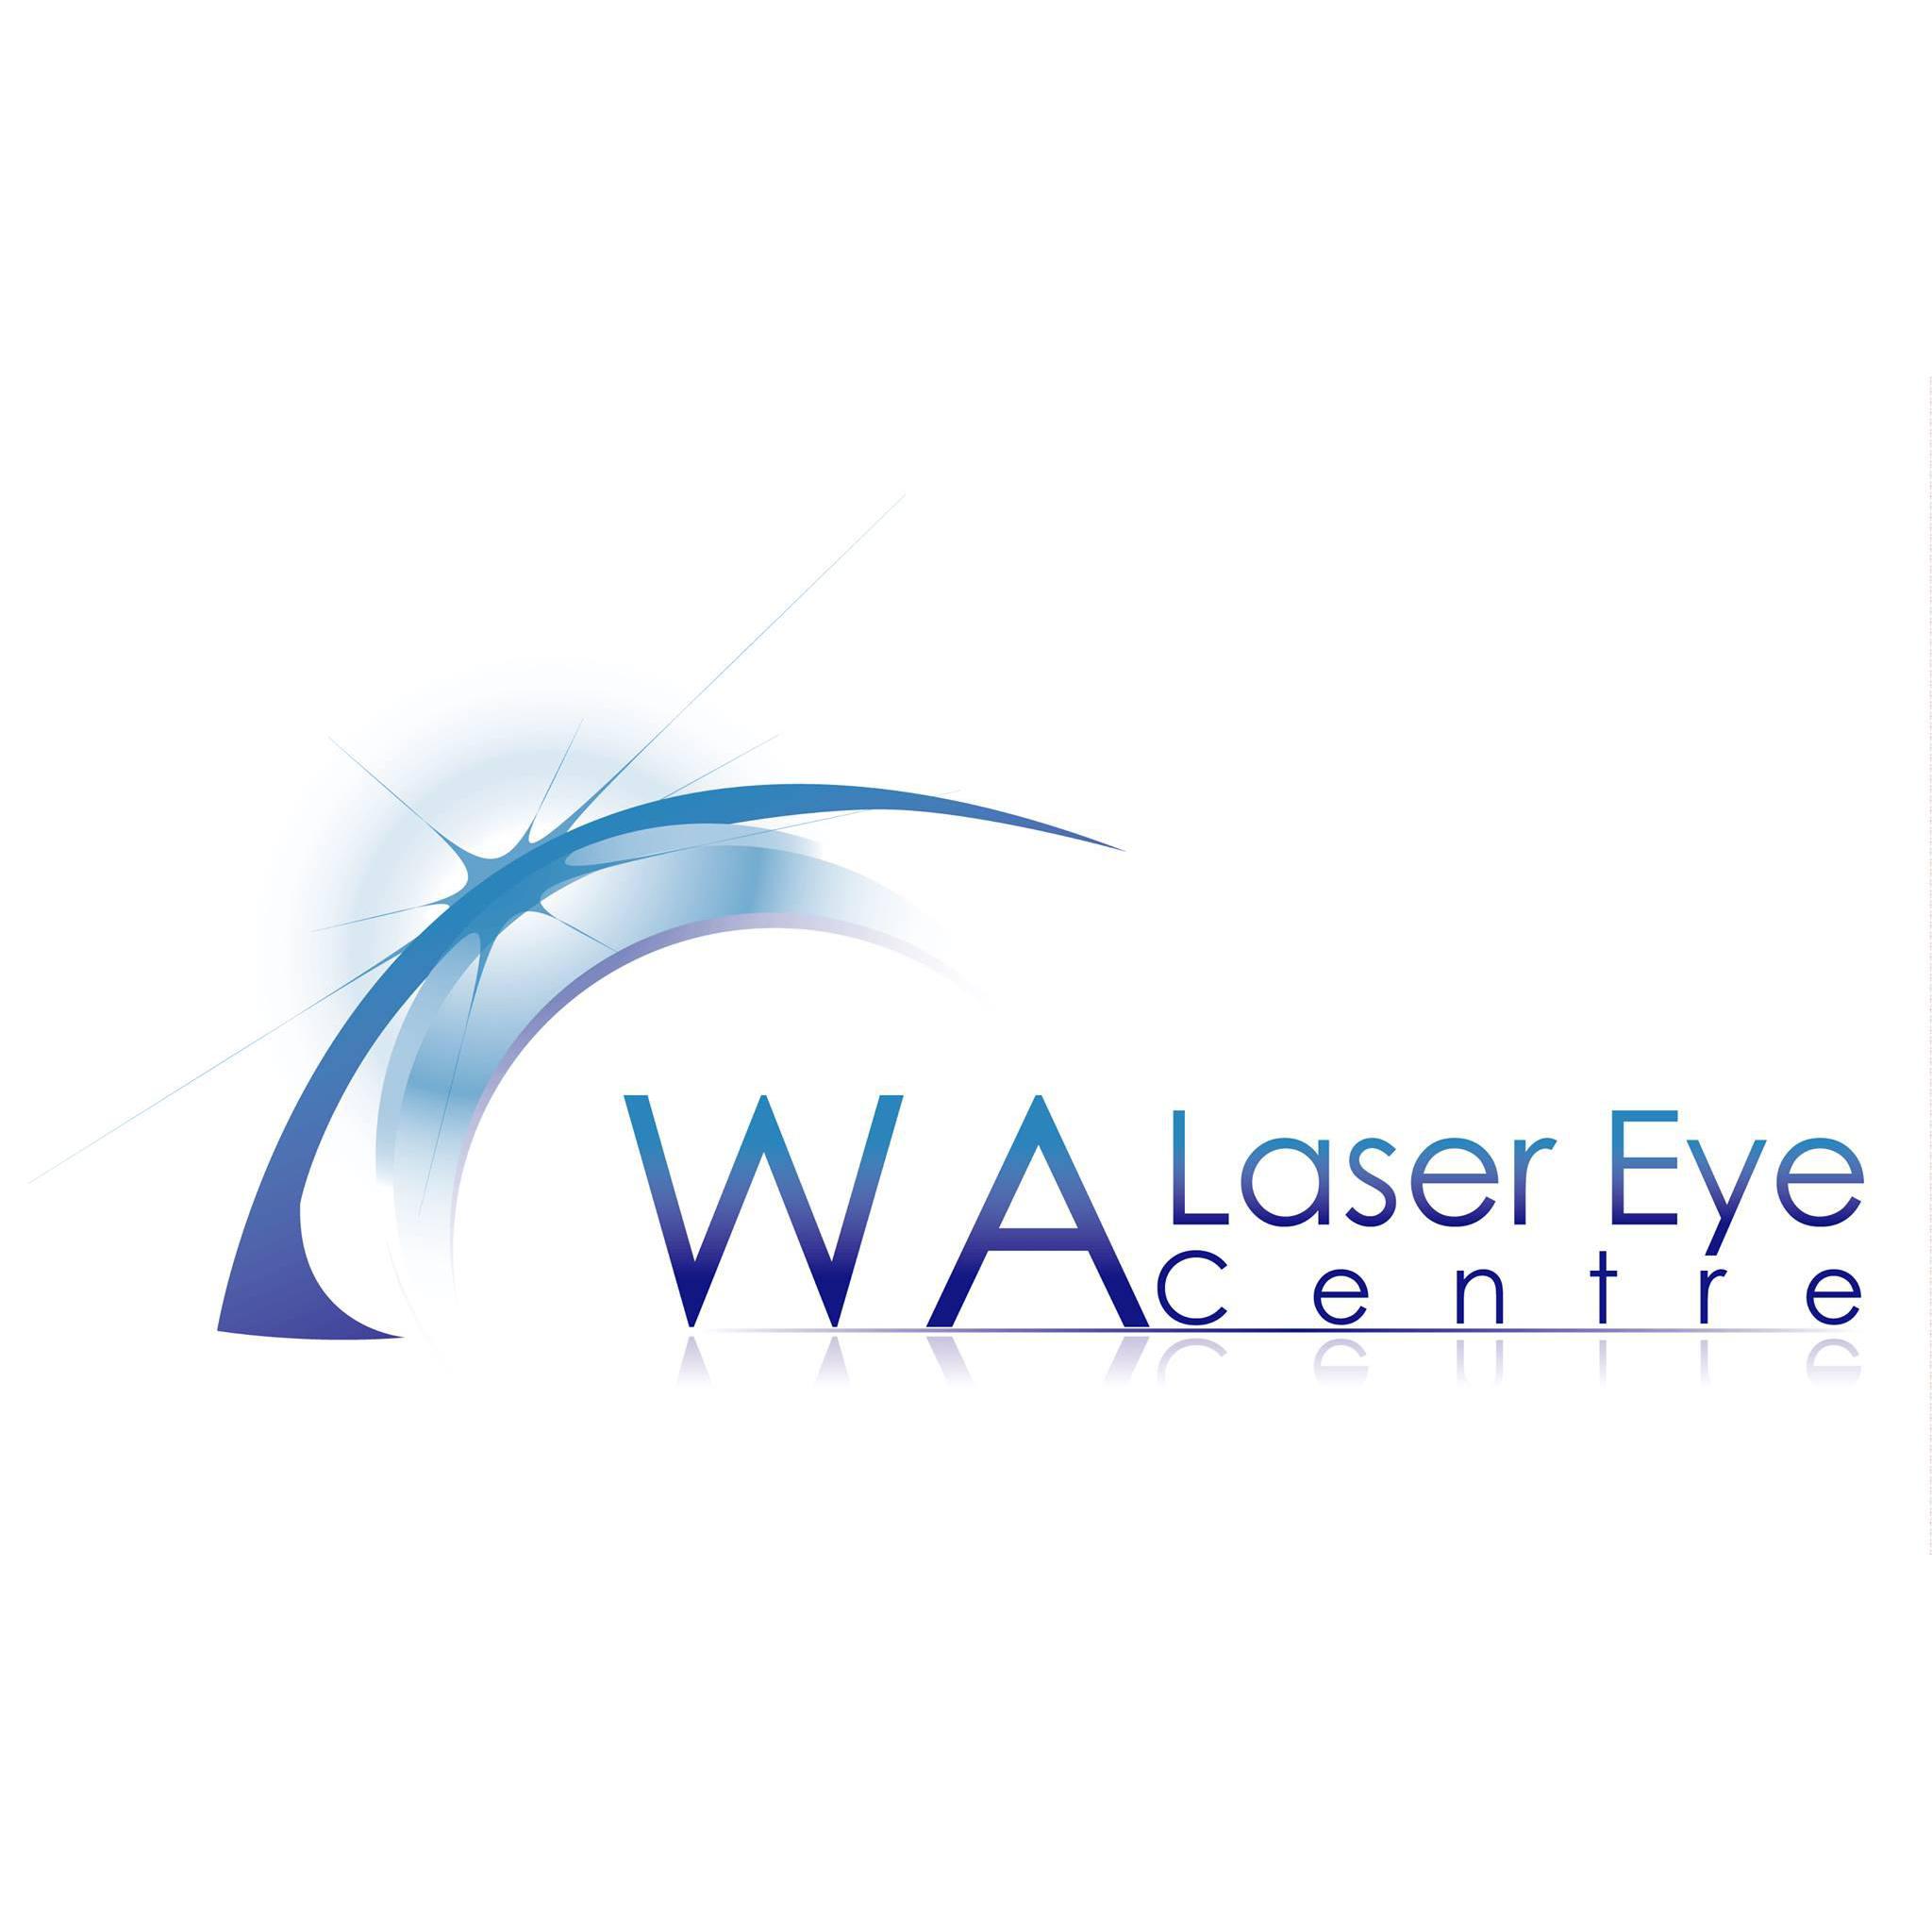 WA Laser Eye Centre - Melville, WA 6156 - (08) 9330 8463 | ShowMeLocal.com